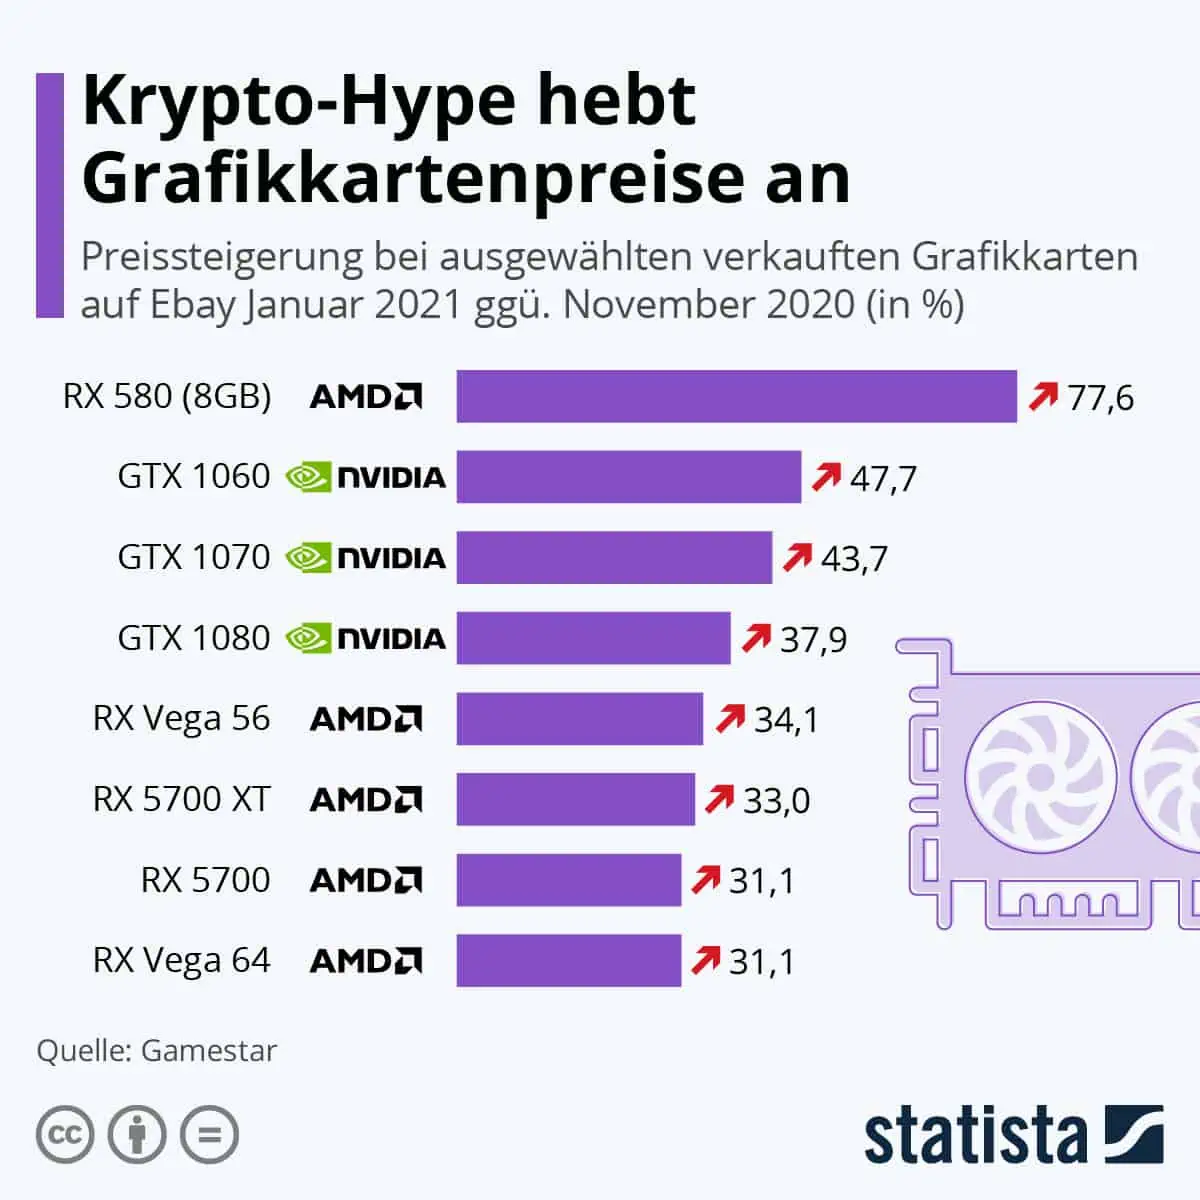 krypto-hype-hebt-grafikkartenpreise-an-statista-infografik, here's why